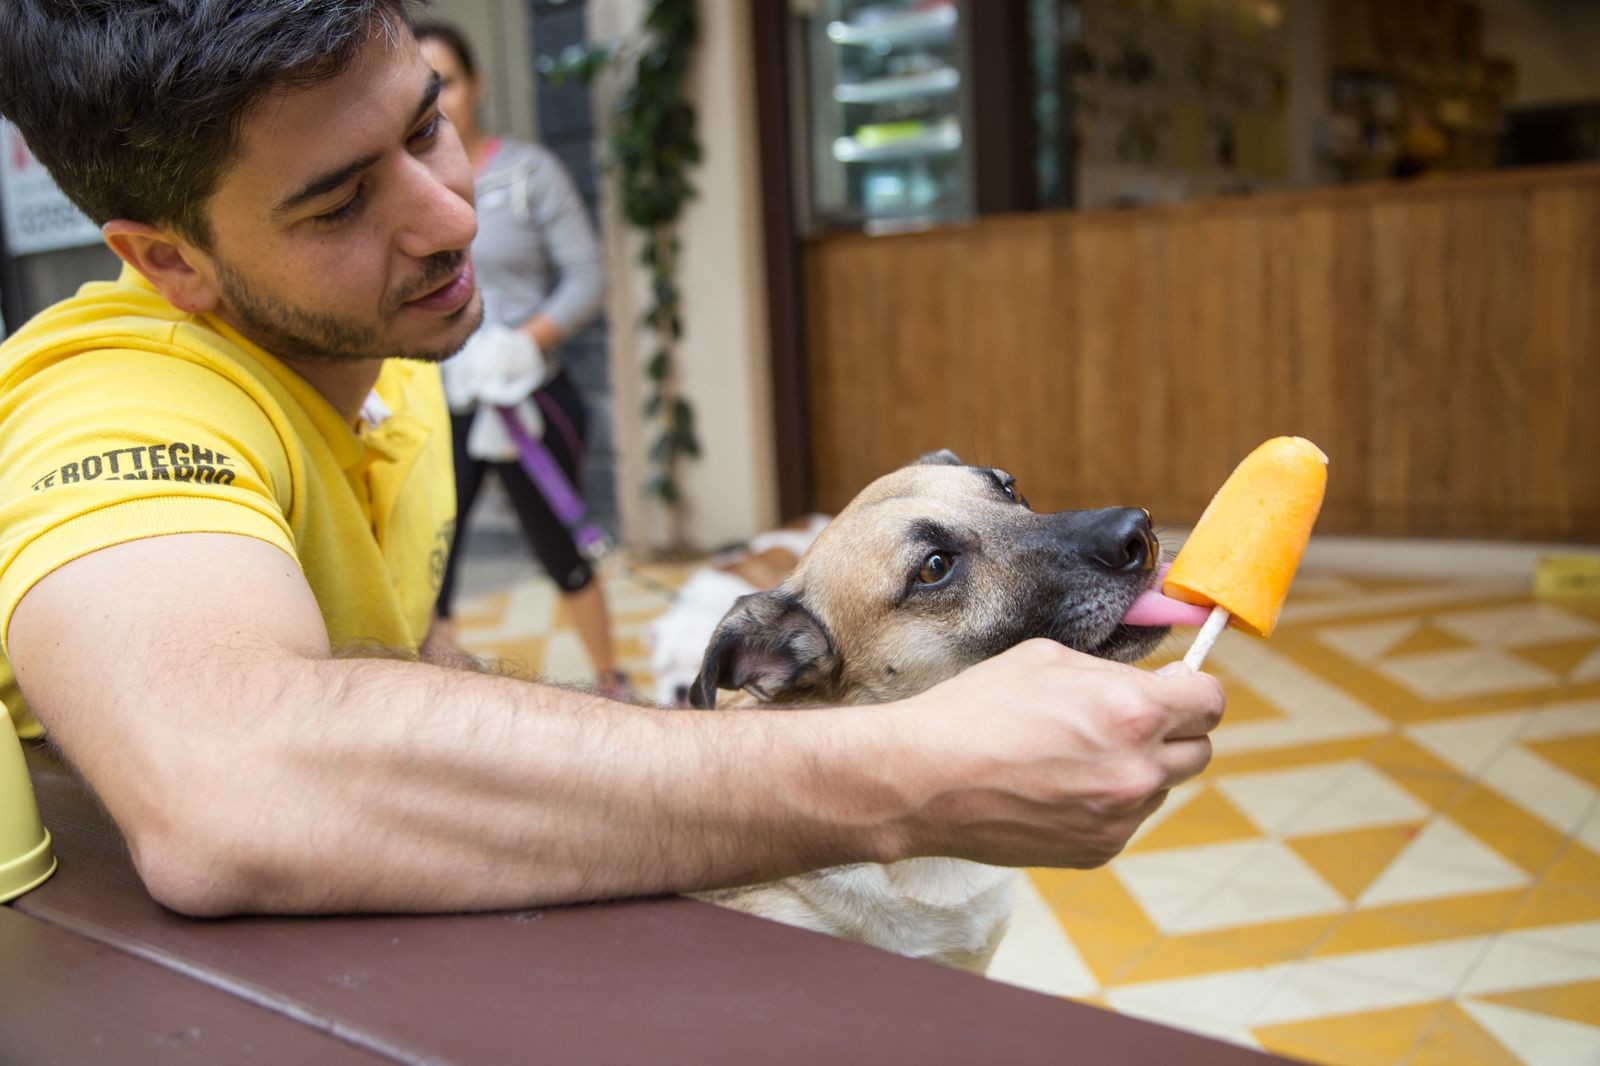 Para quem quer se refrescar junto com os pets, o Le Botteghe Di Leonard possui uma linha de picolés desenvolvida especialmente para os cães (Foto: Divulgação)